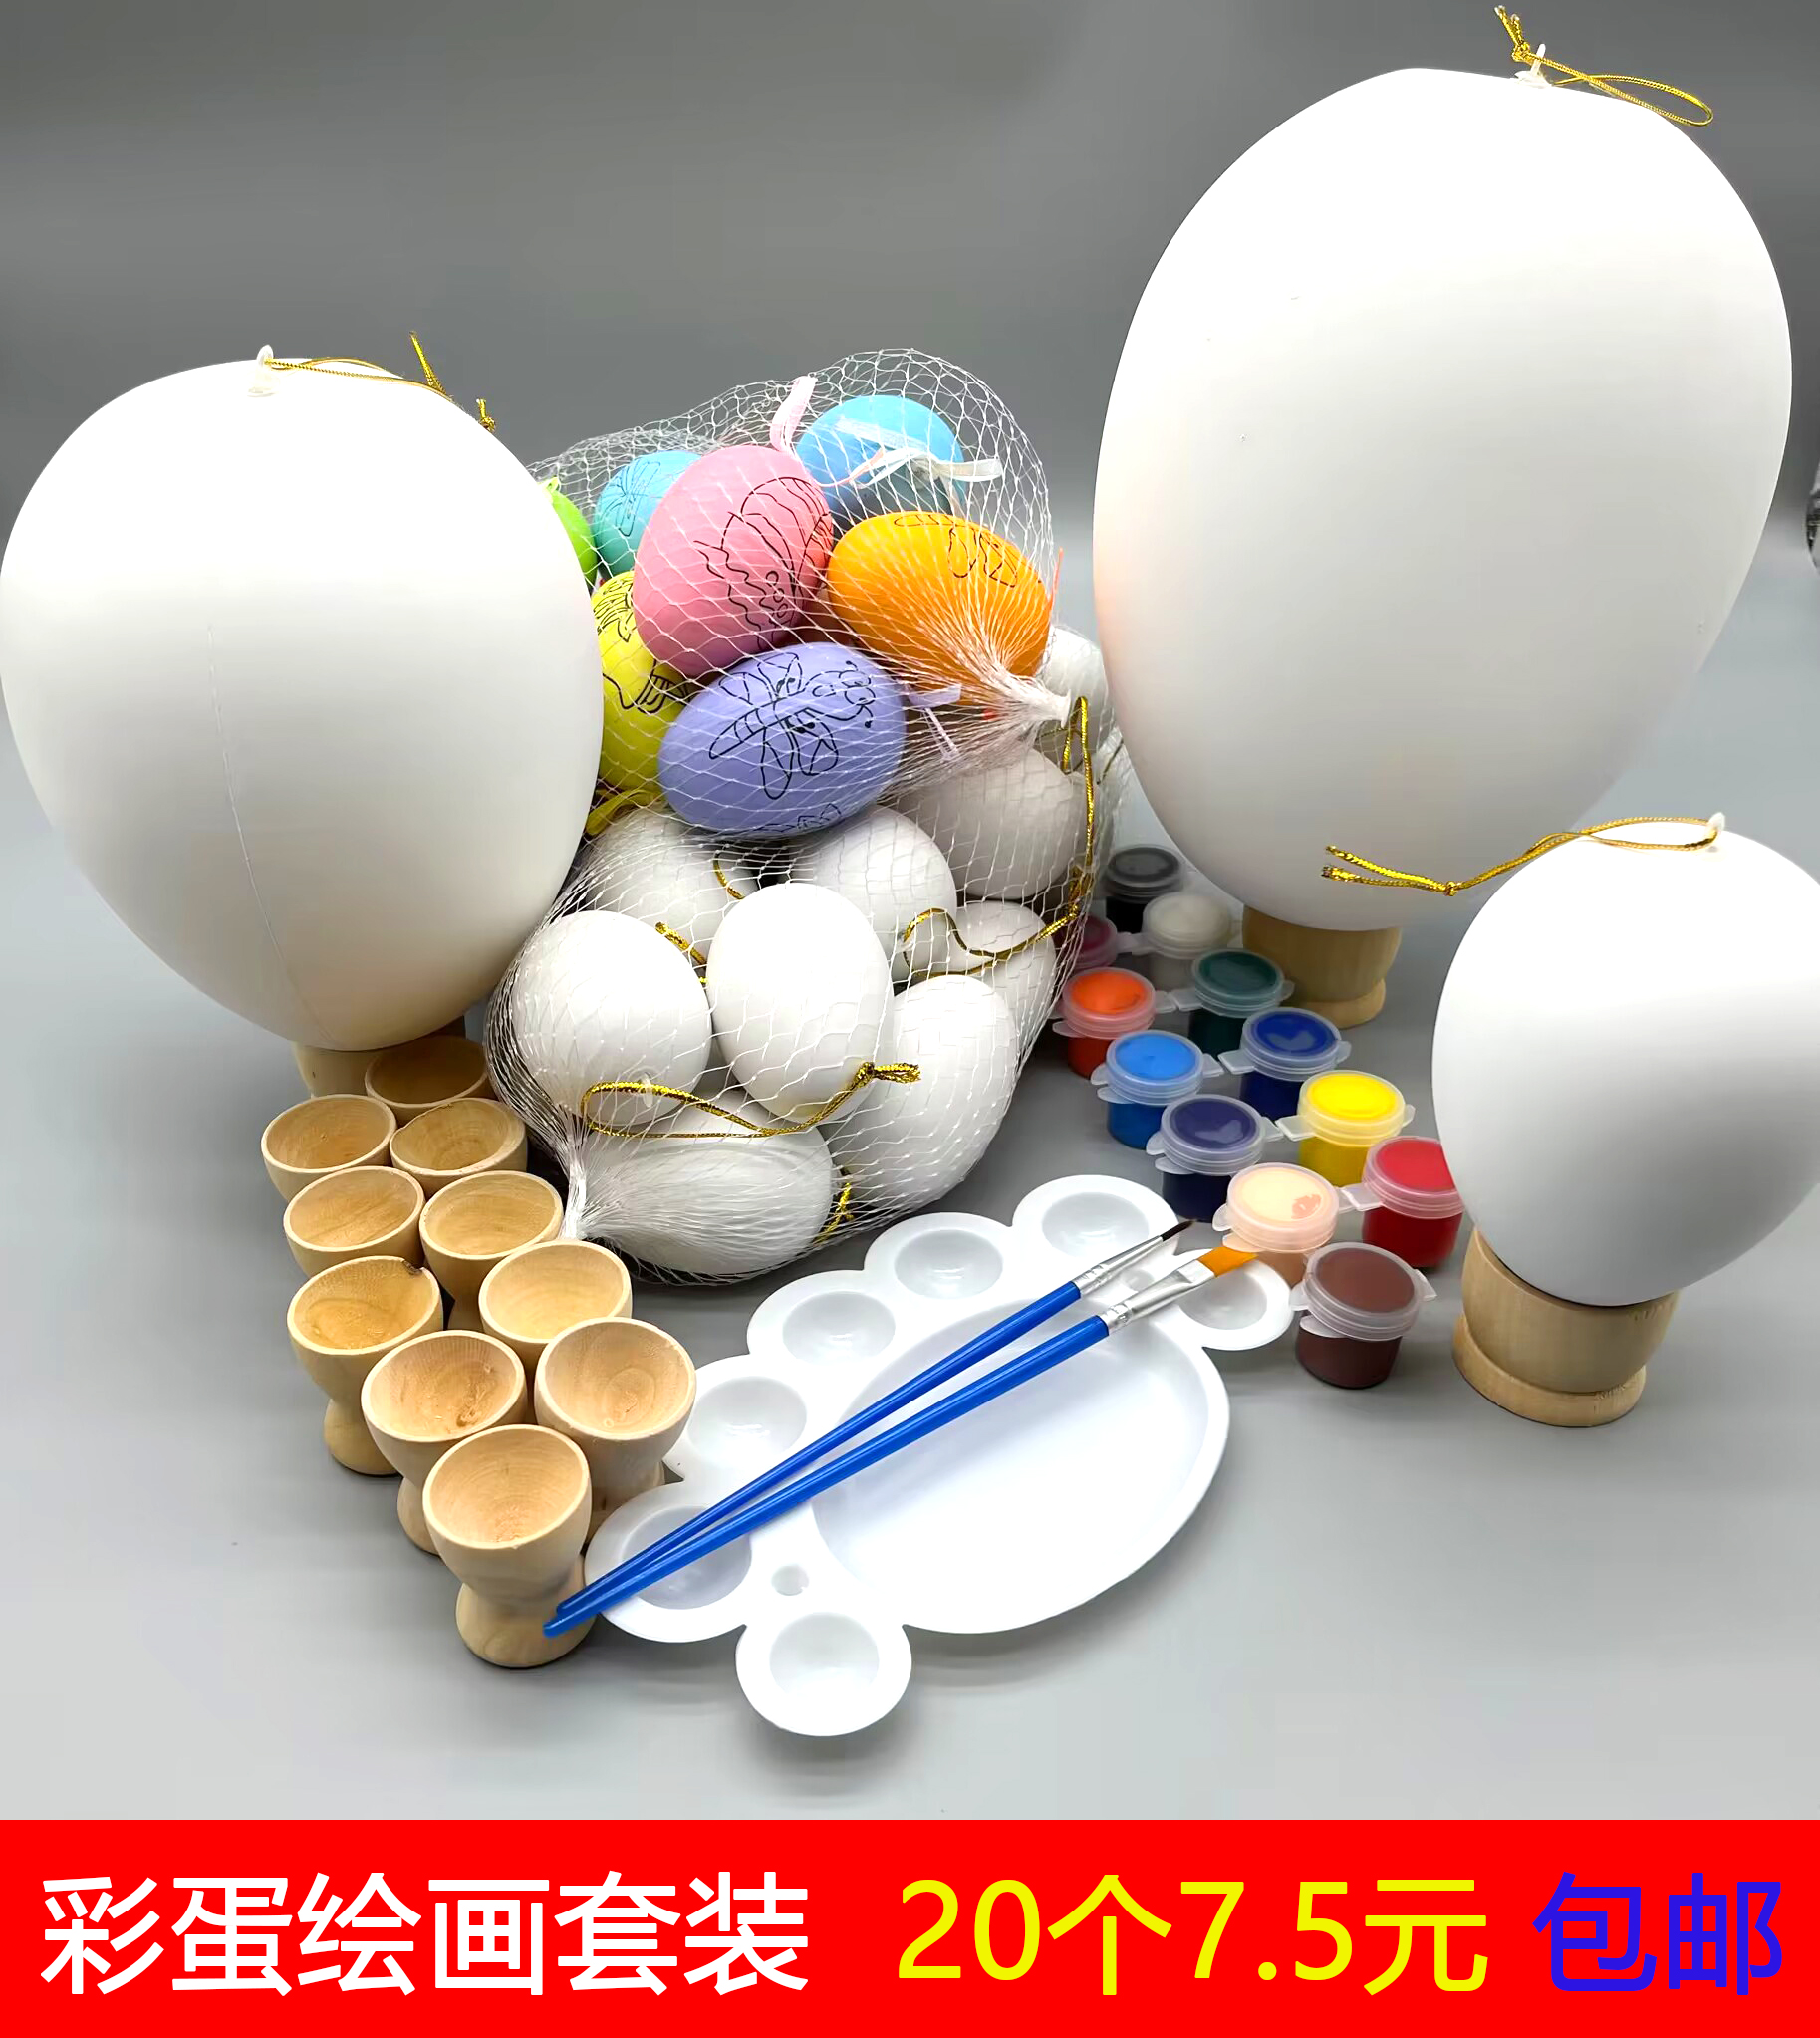 复活节彩绘鸡蛋塑料仿真彩蛋壳幼儿园儿童diy手工材料手绘画涂色